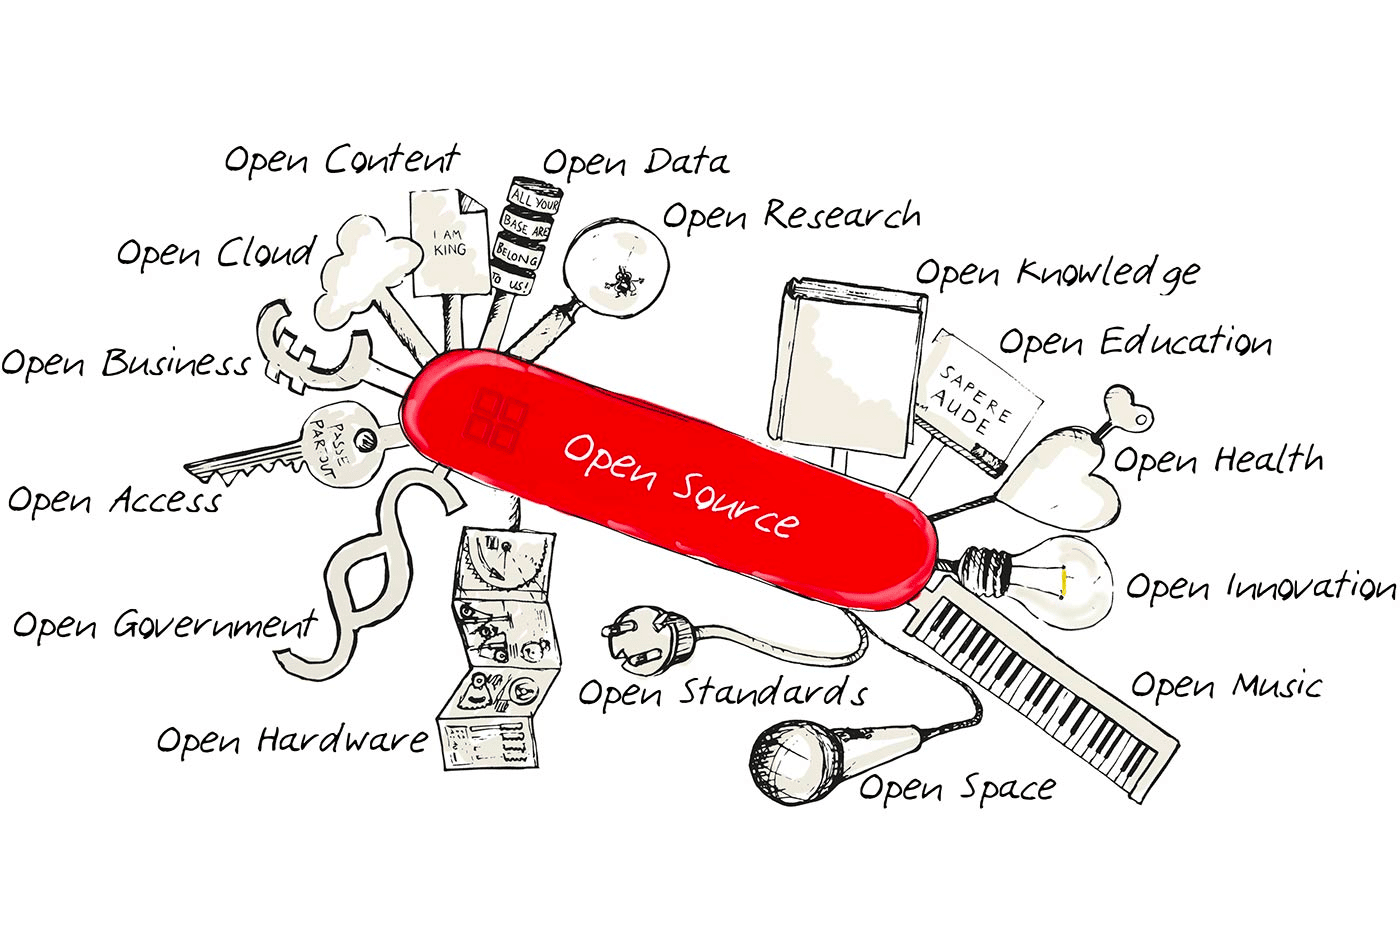 An artist’s rendering of an open source platform